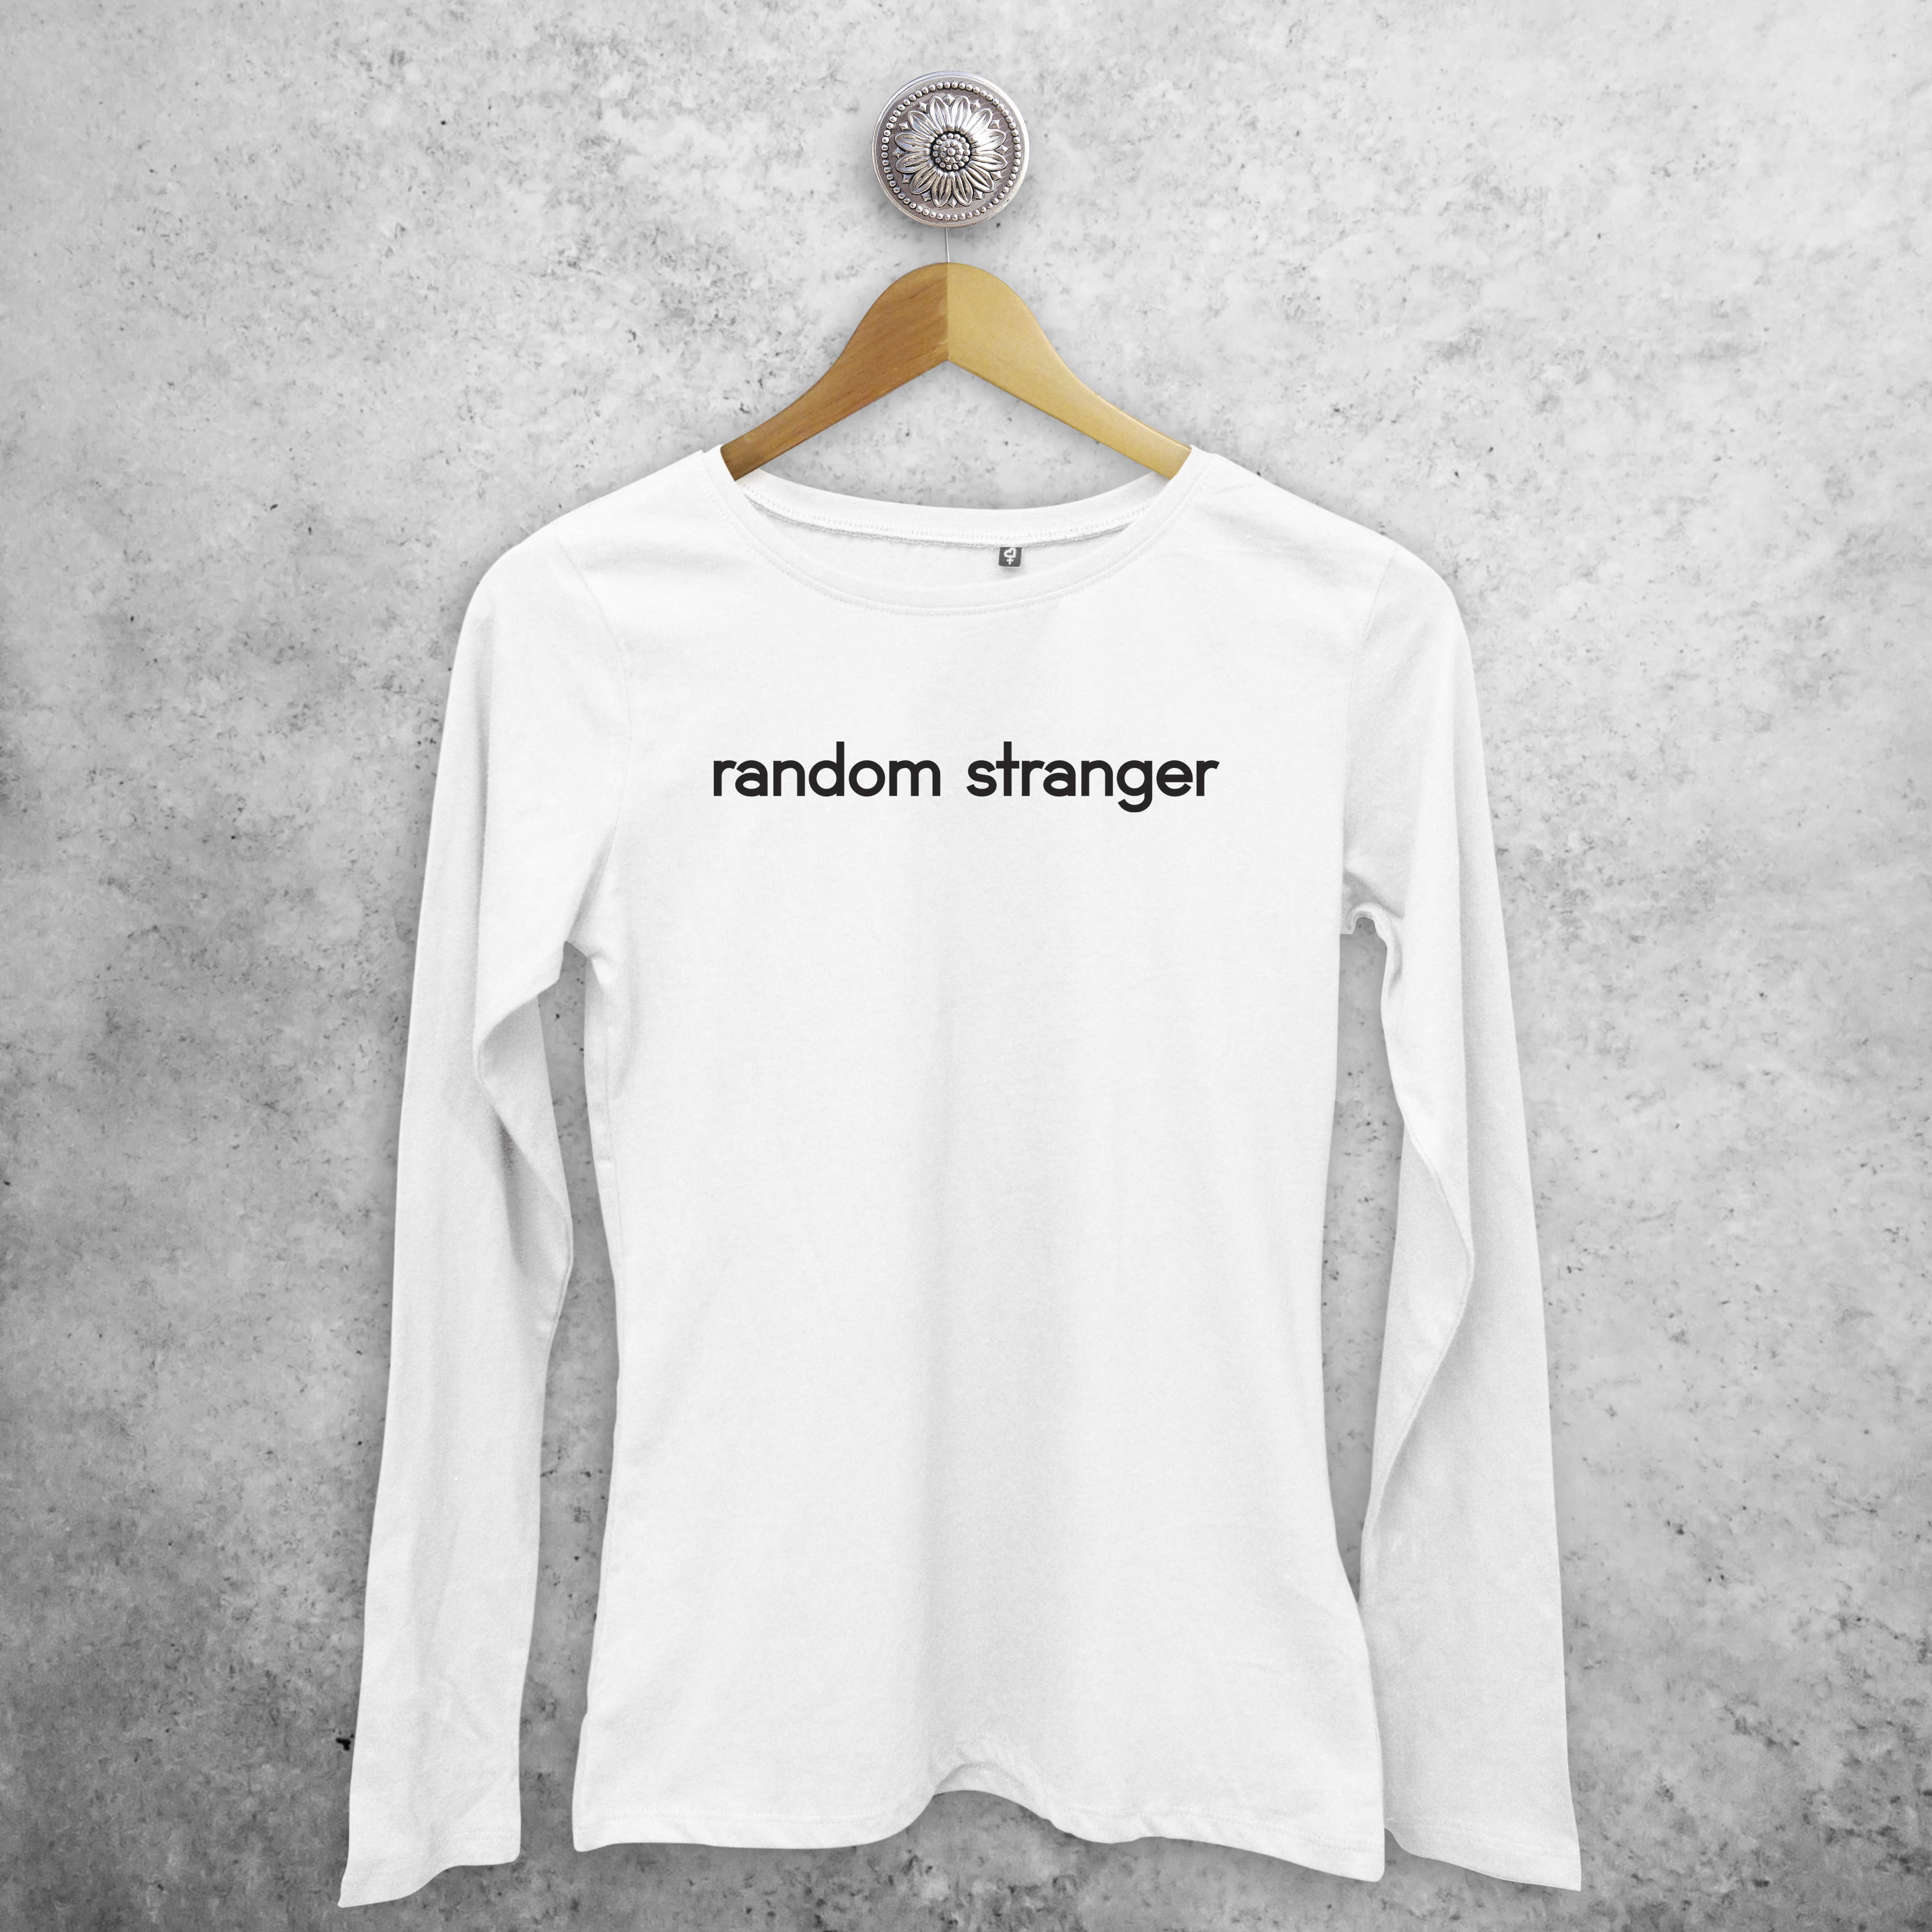 'Random stranger' adult longsleeve shirt